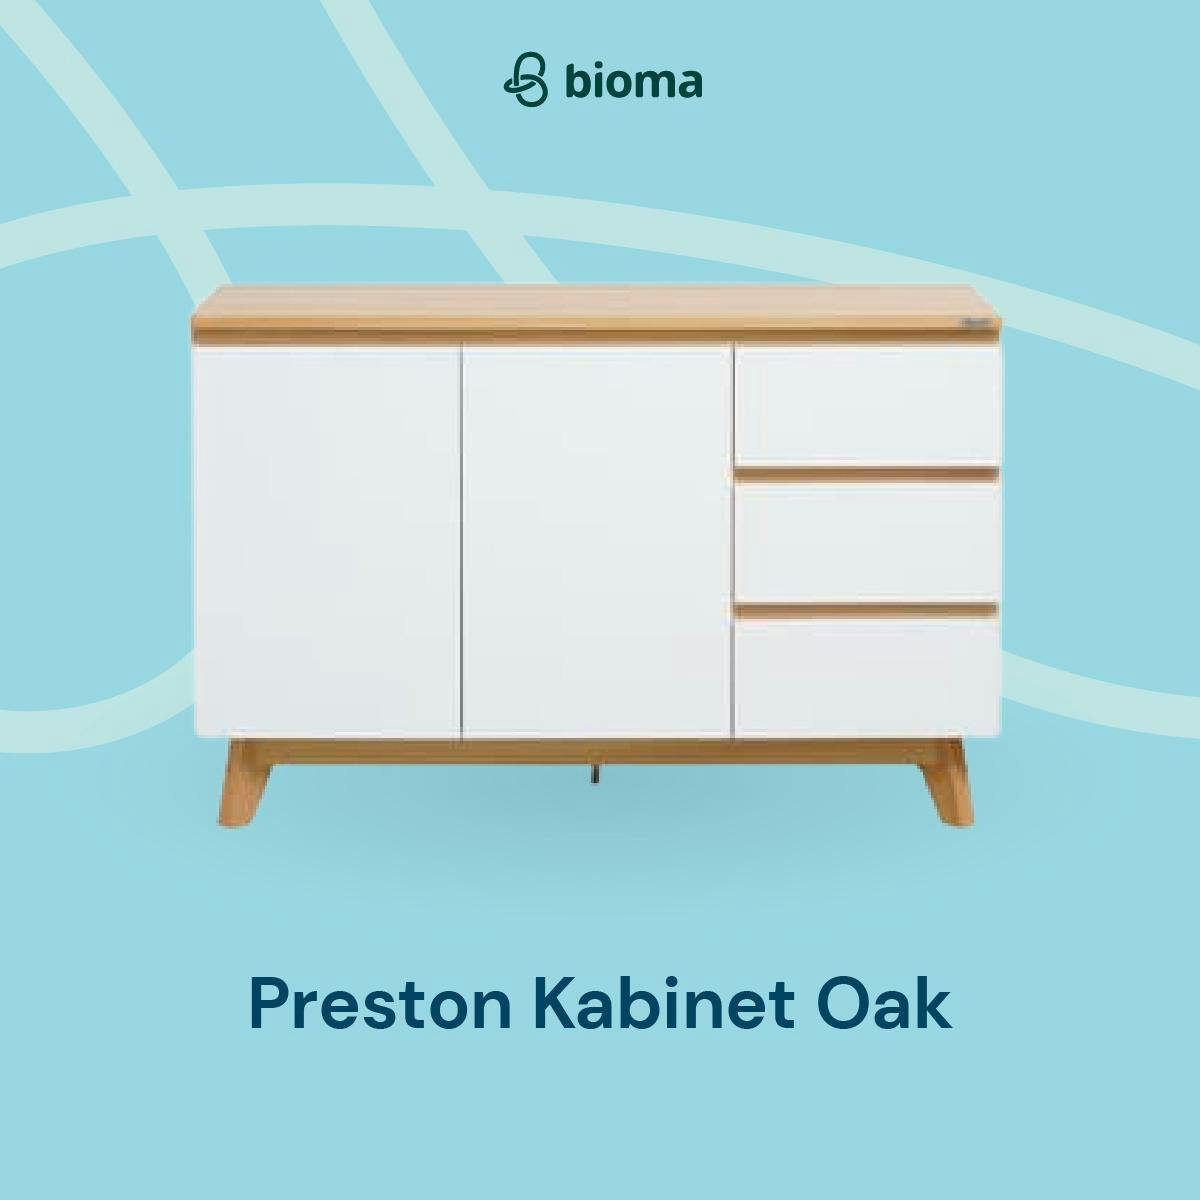 Image 404 Preston Cabinet